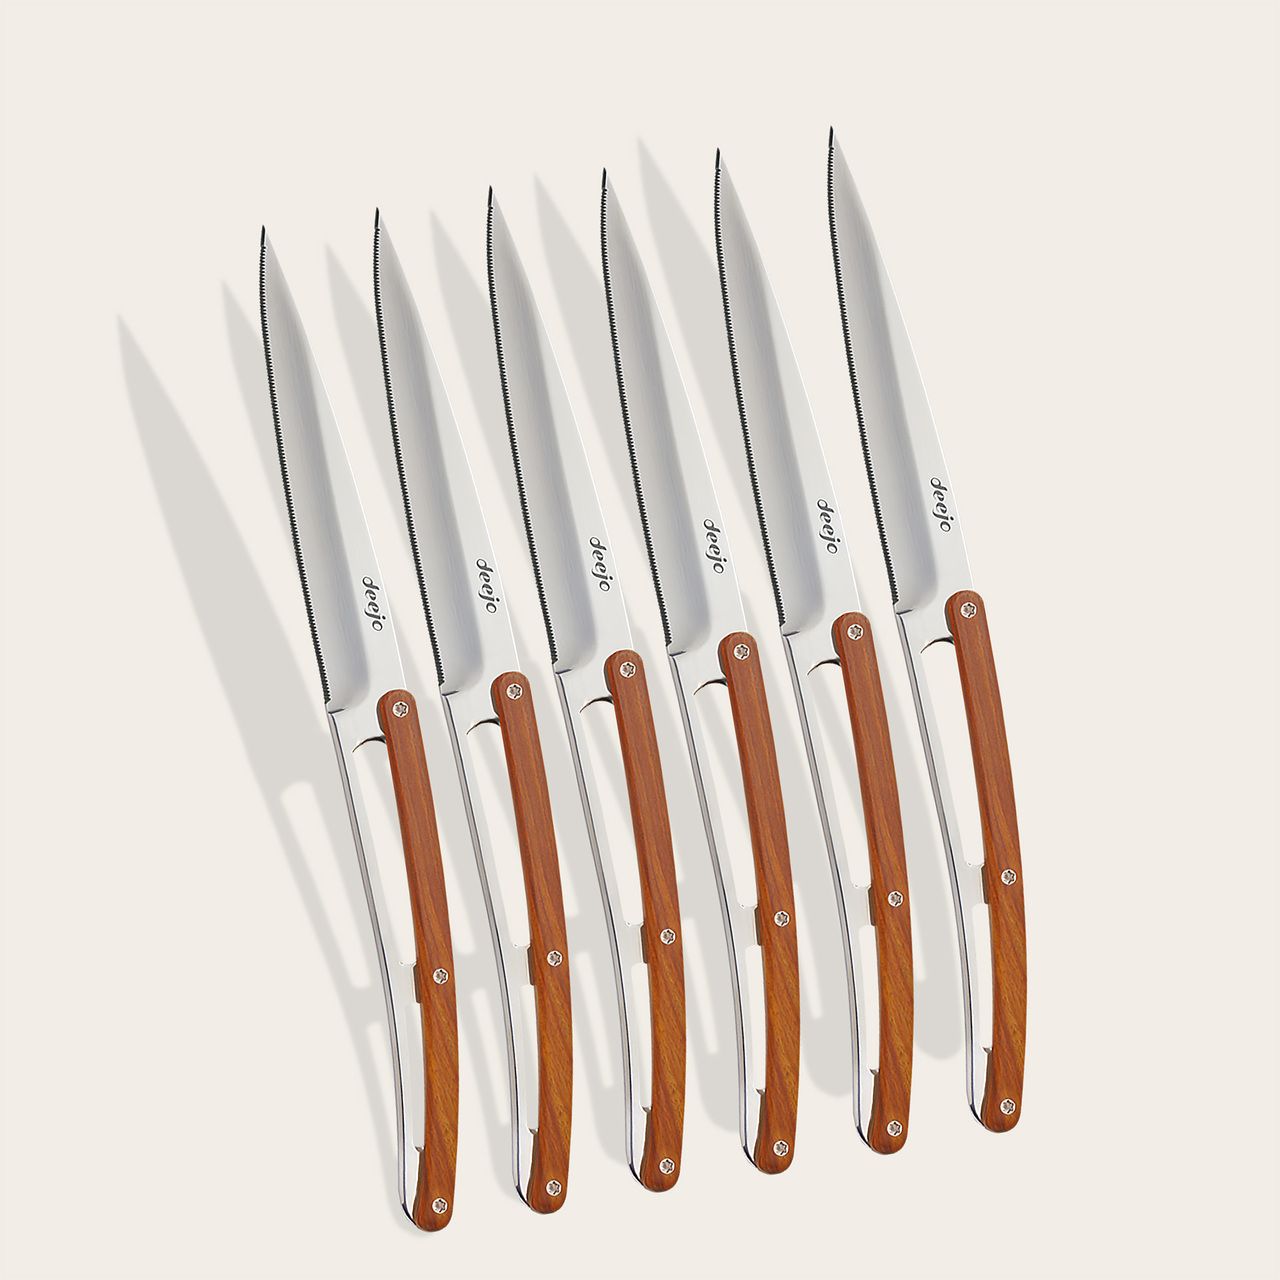 https://www.deejo.com/medias/produits/1682120364/22484_1280-6-deejo-steak-knives-serrated-coral-wood.jpg